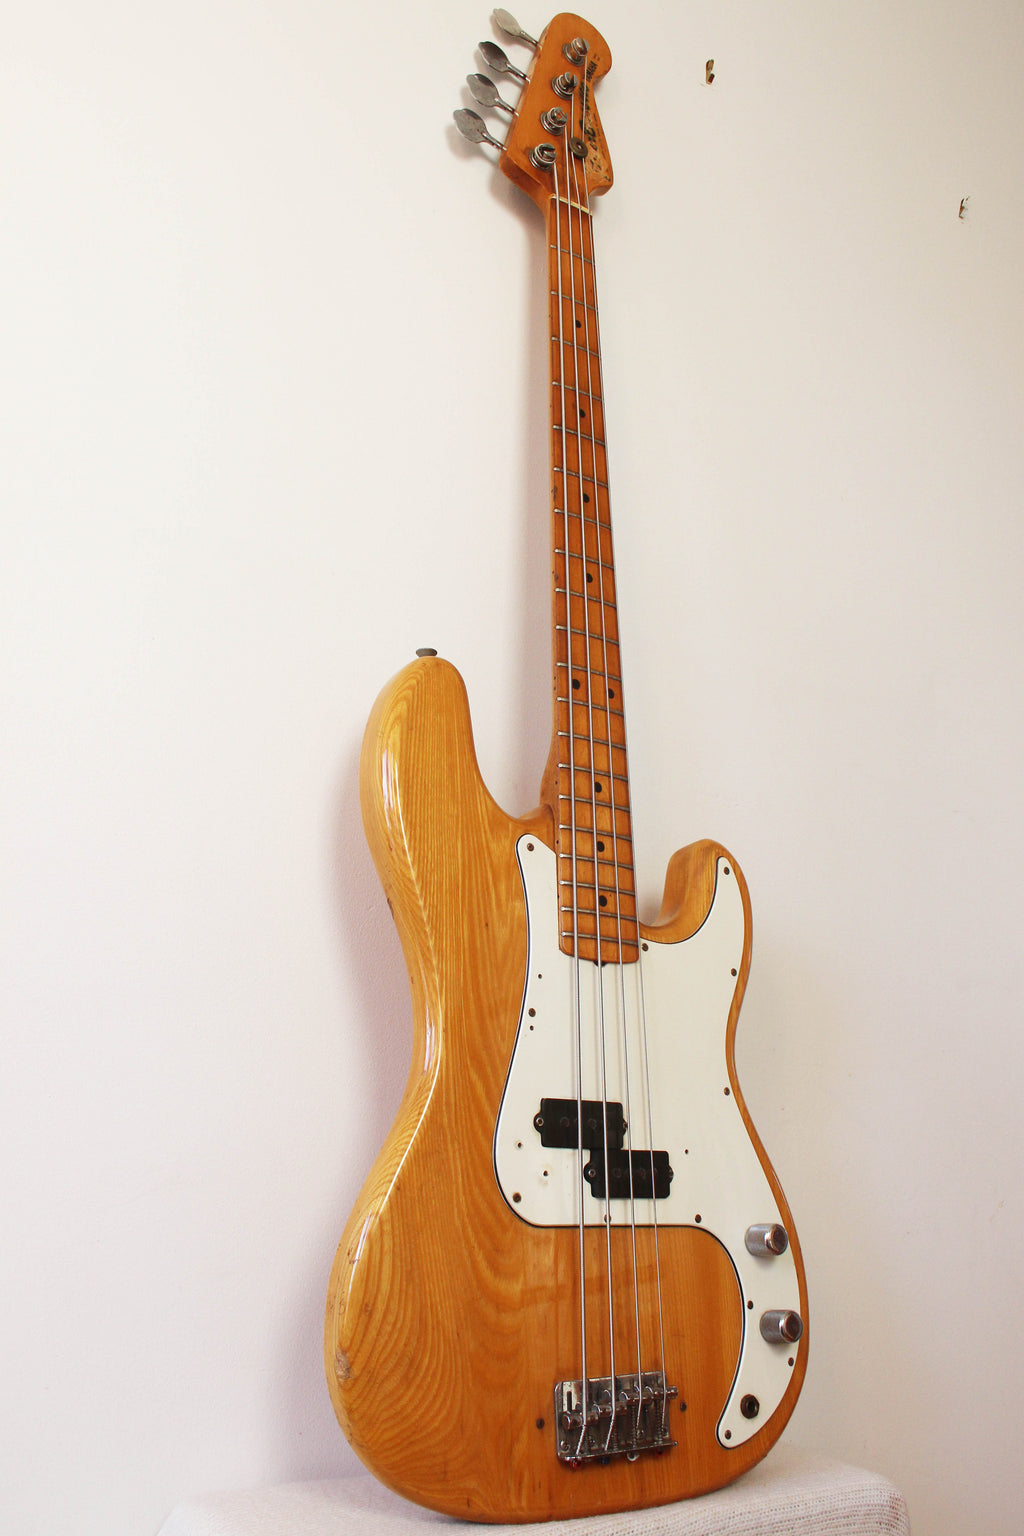 Used Yamaha PB400 Pulser Bass Natural 1980